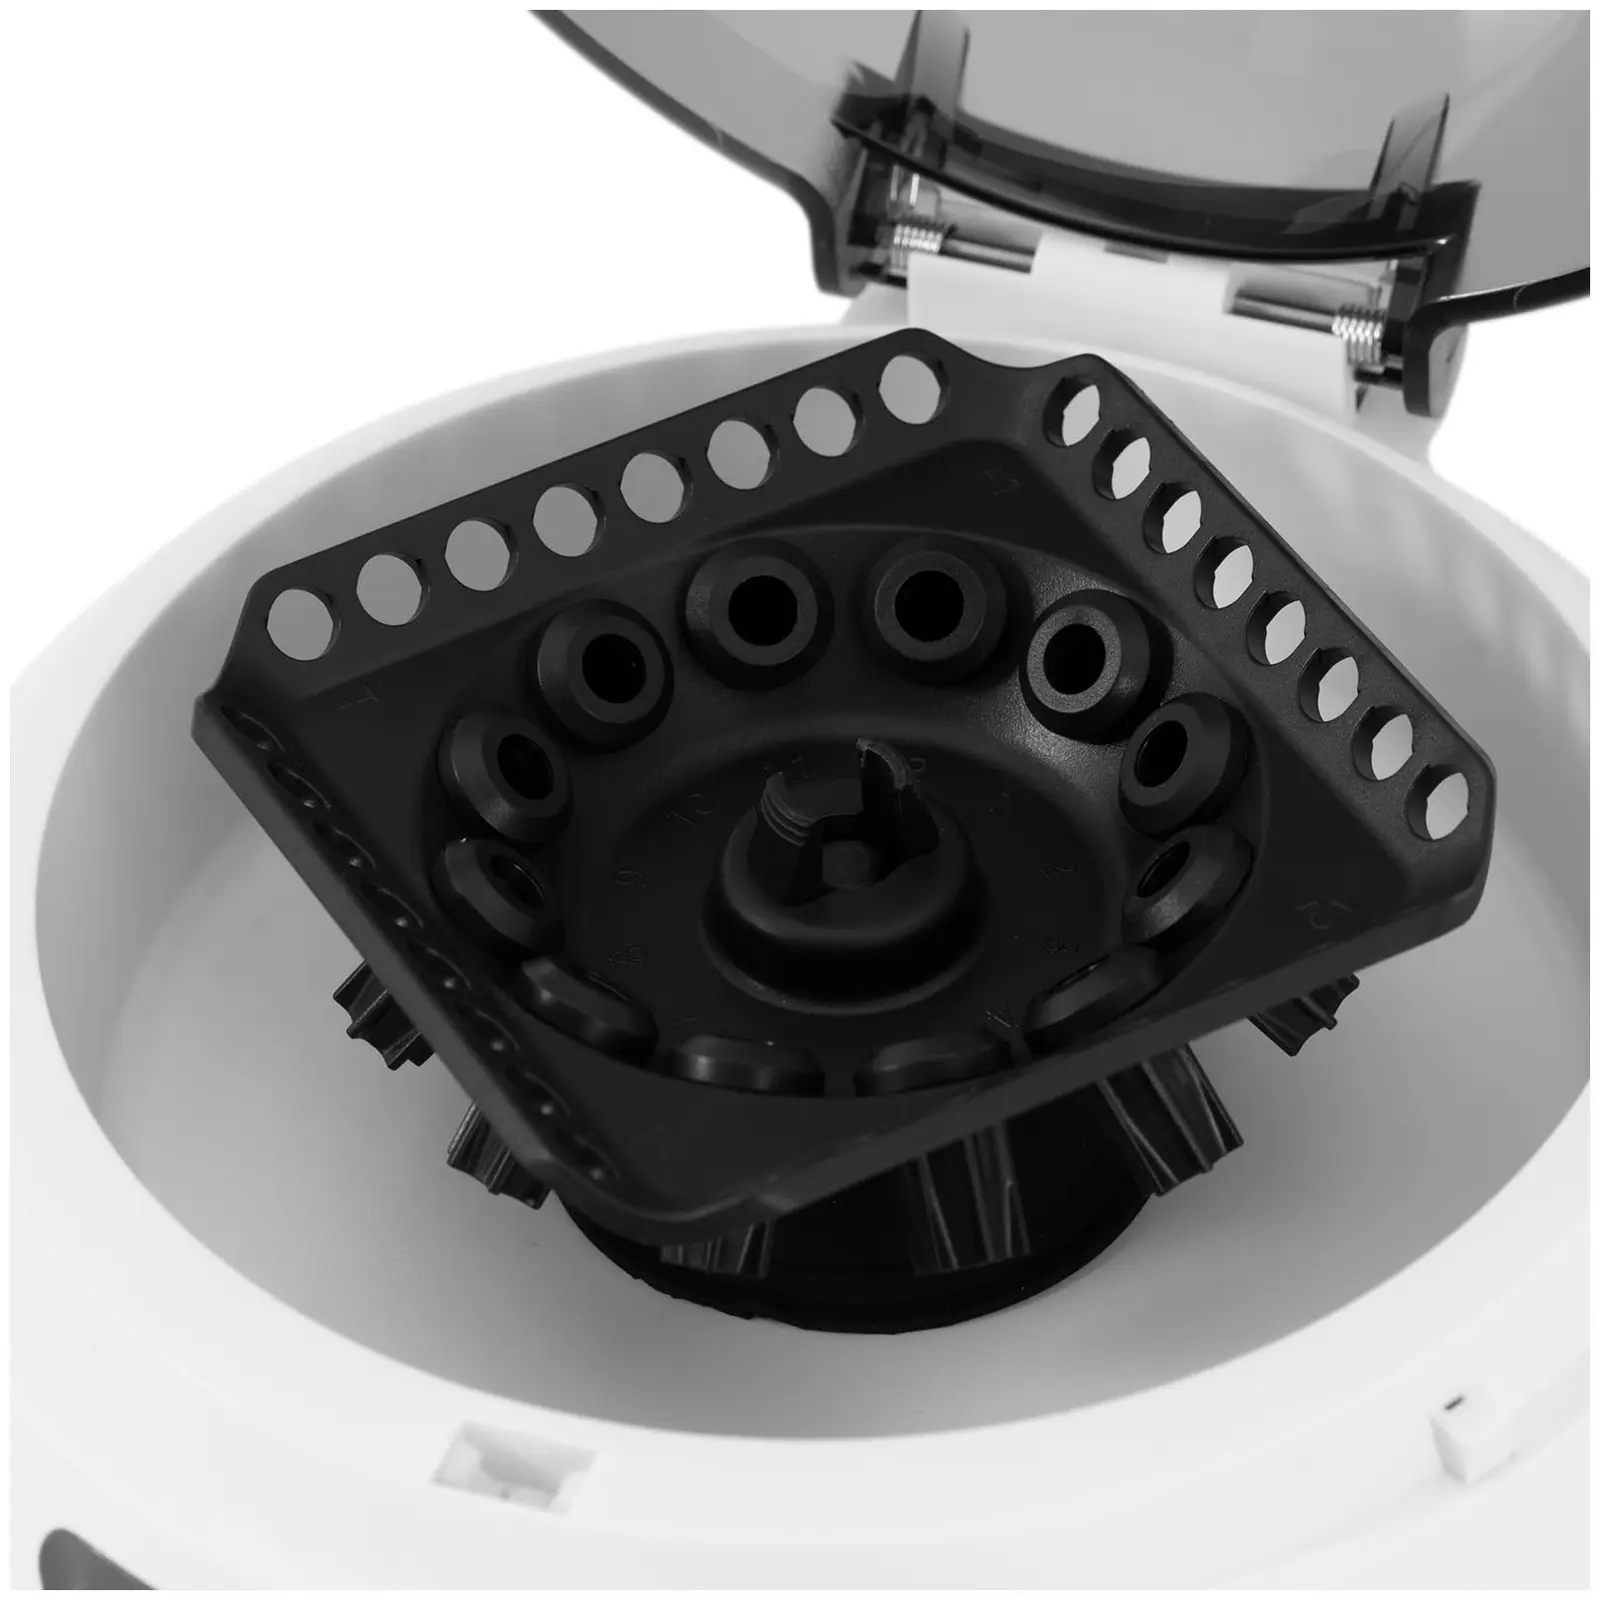 Stolná centrifúga – rotor 2 v 1 – {{max_rotation_speed_725_temp}} rpm – pre 12 skúmavky / 4 PCR prúžky – RCF 3286 xg